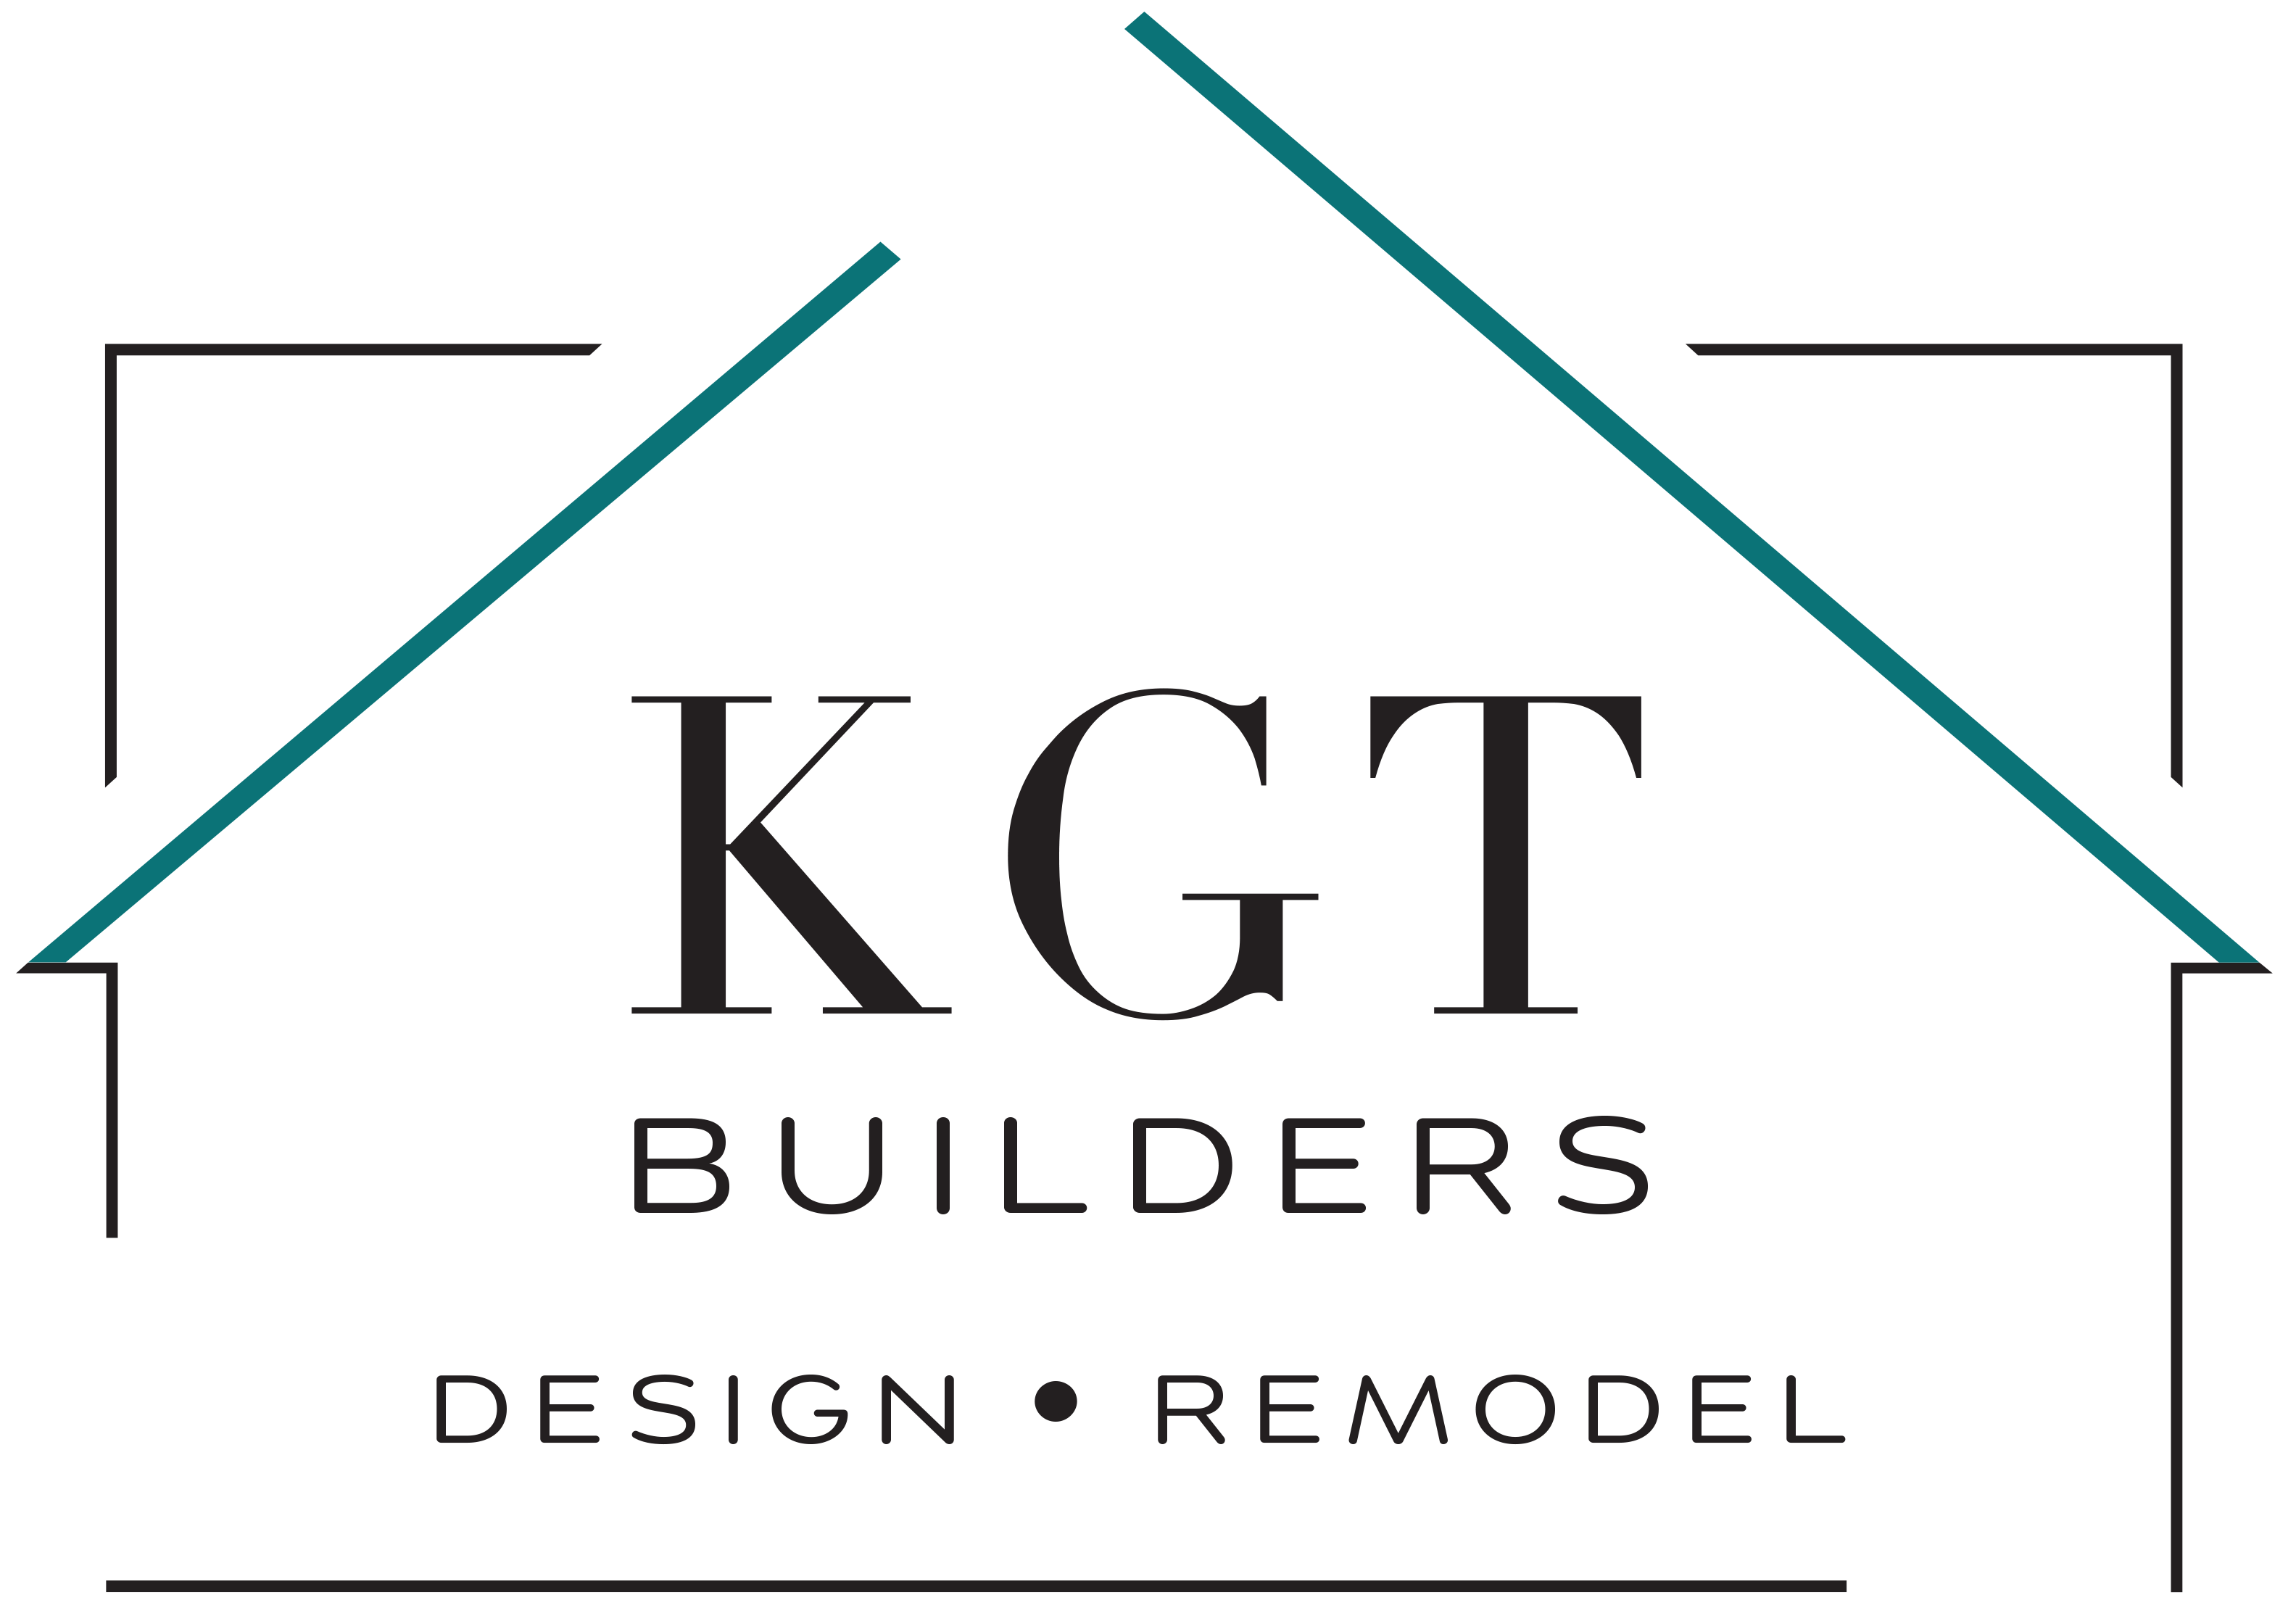 KGT Remodeling